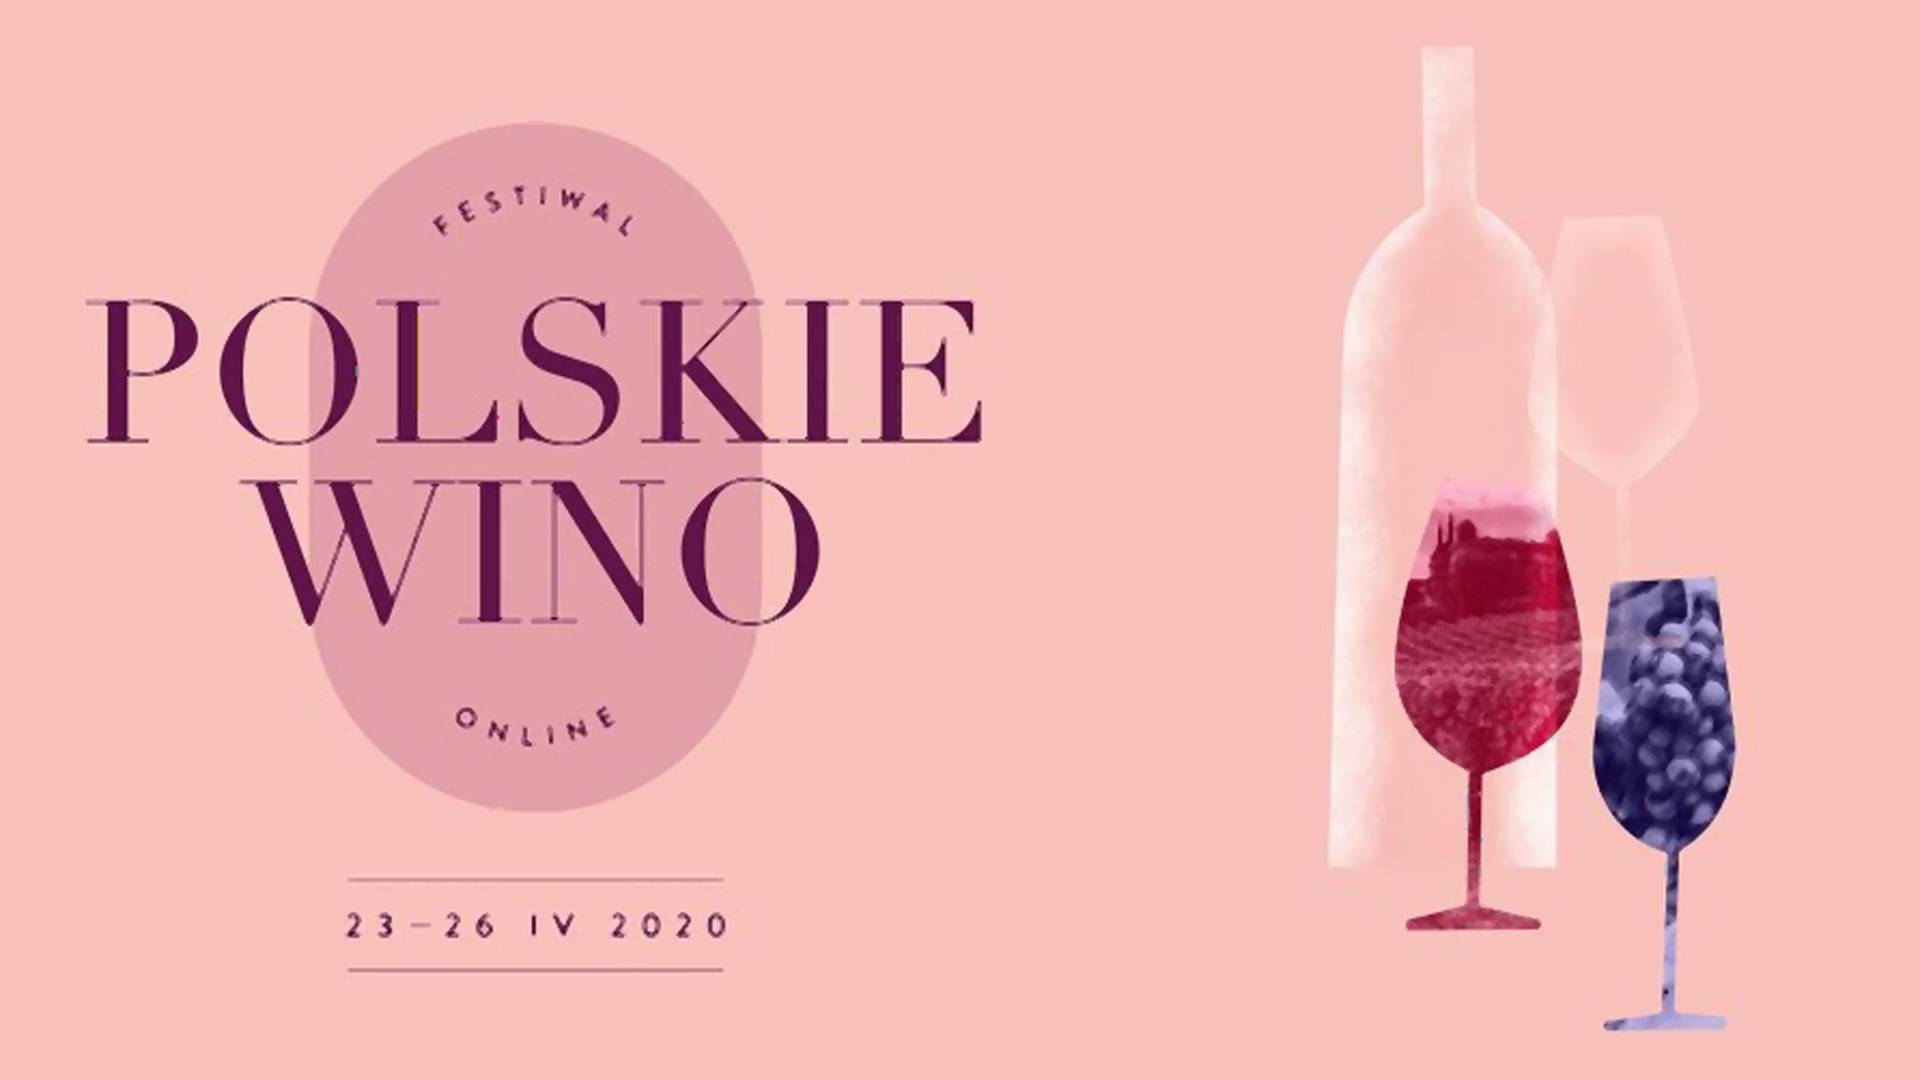 Festiwal Polskie Wino online - winne doznania w domu z najlepszymi specjalistami